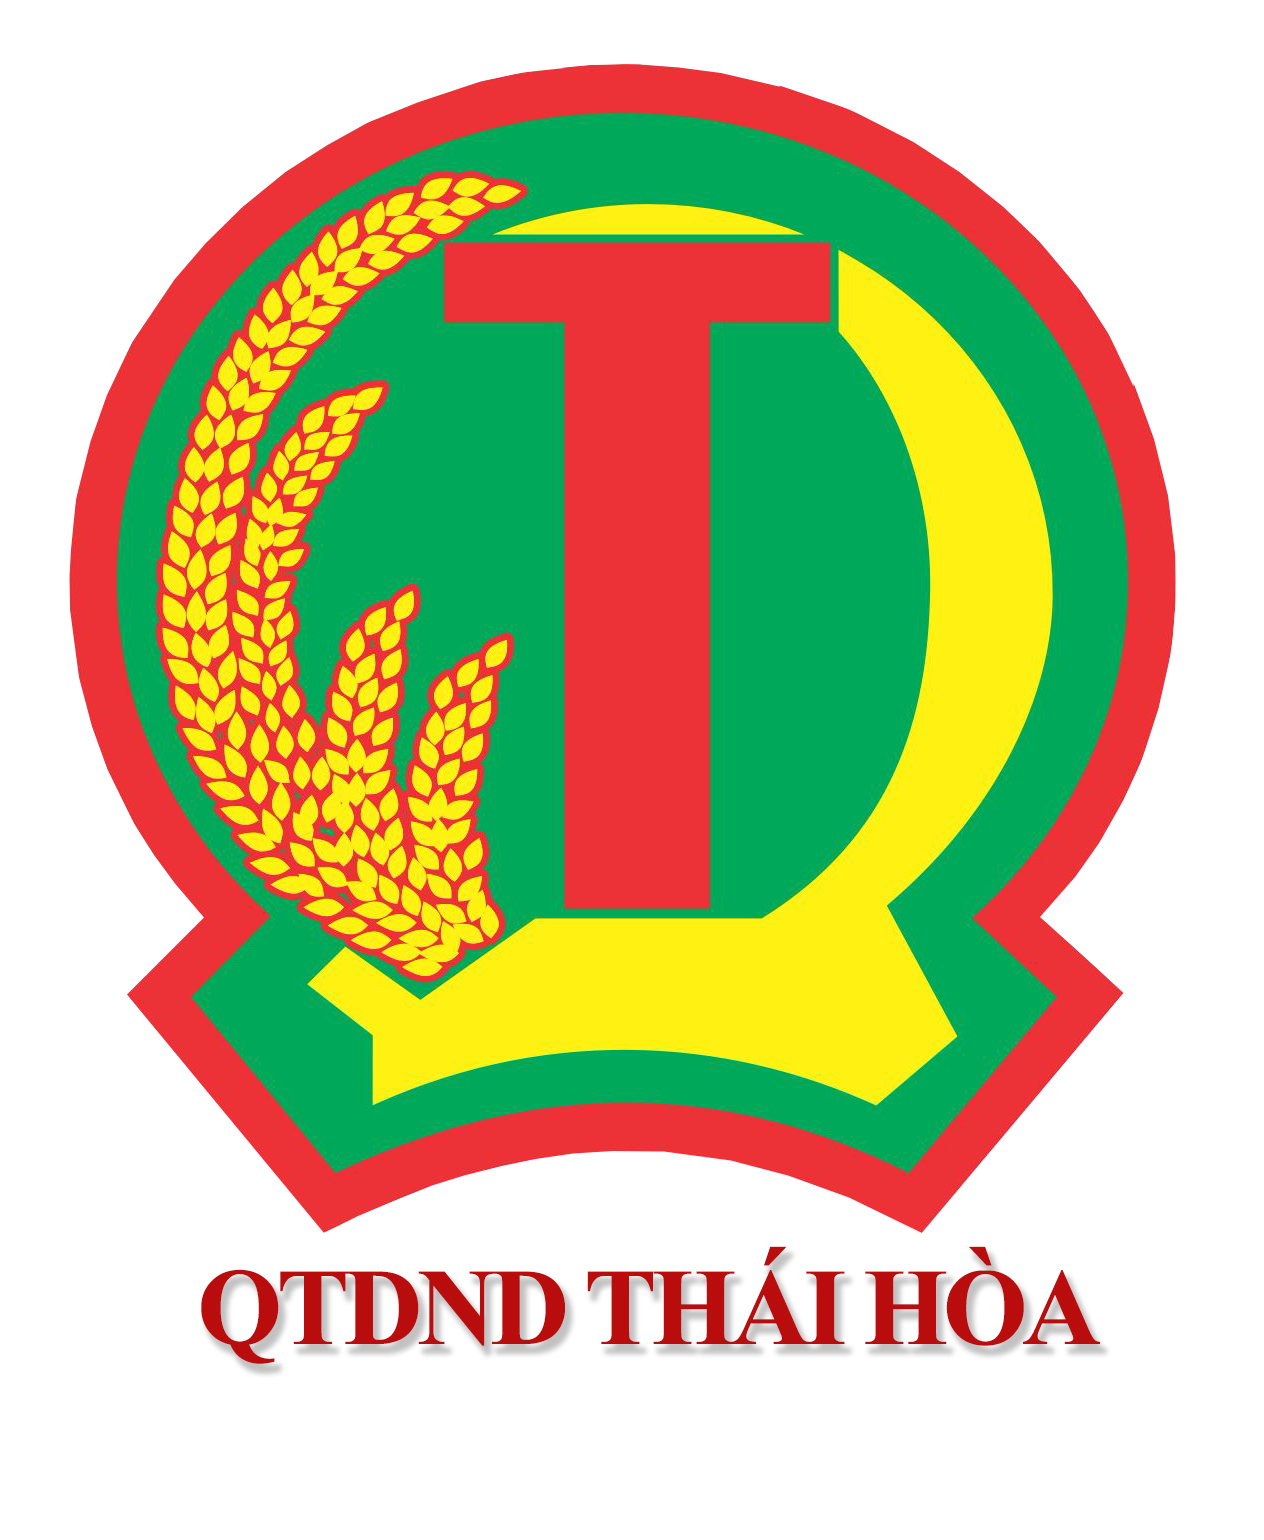 Quỹ tín dụng nhân dân Thái Hoà